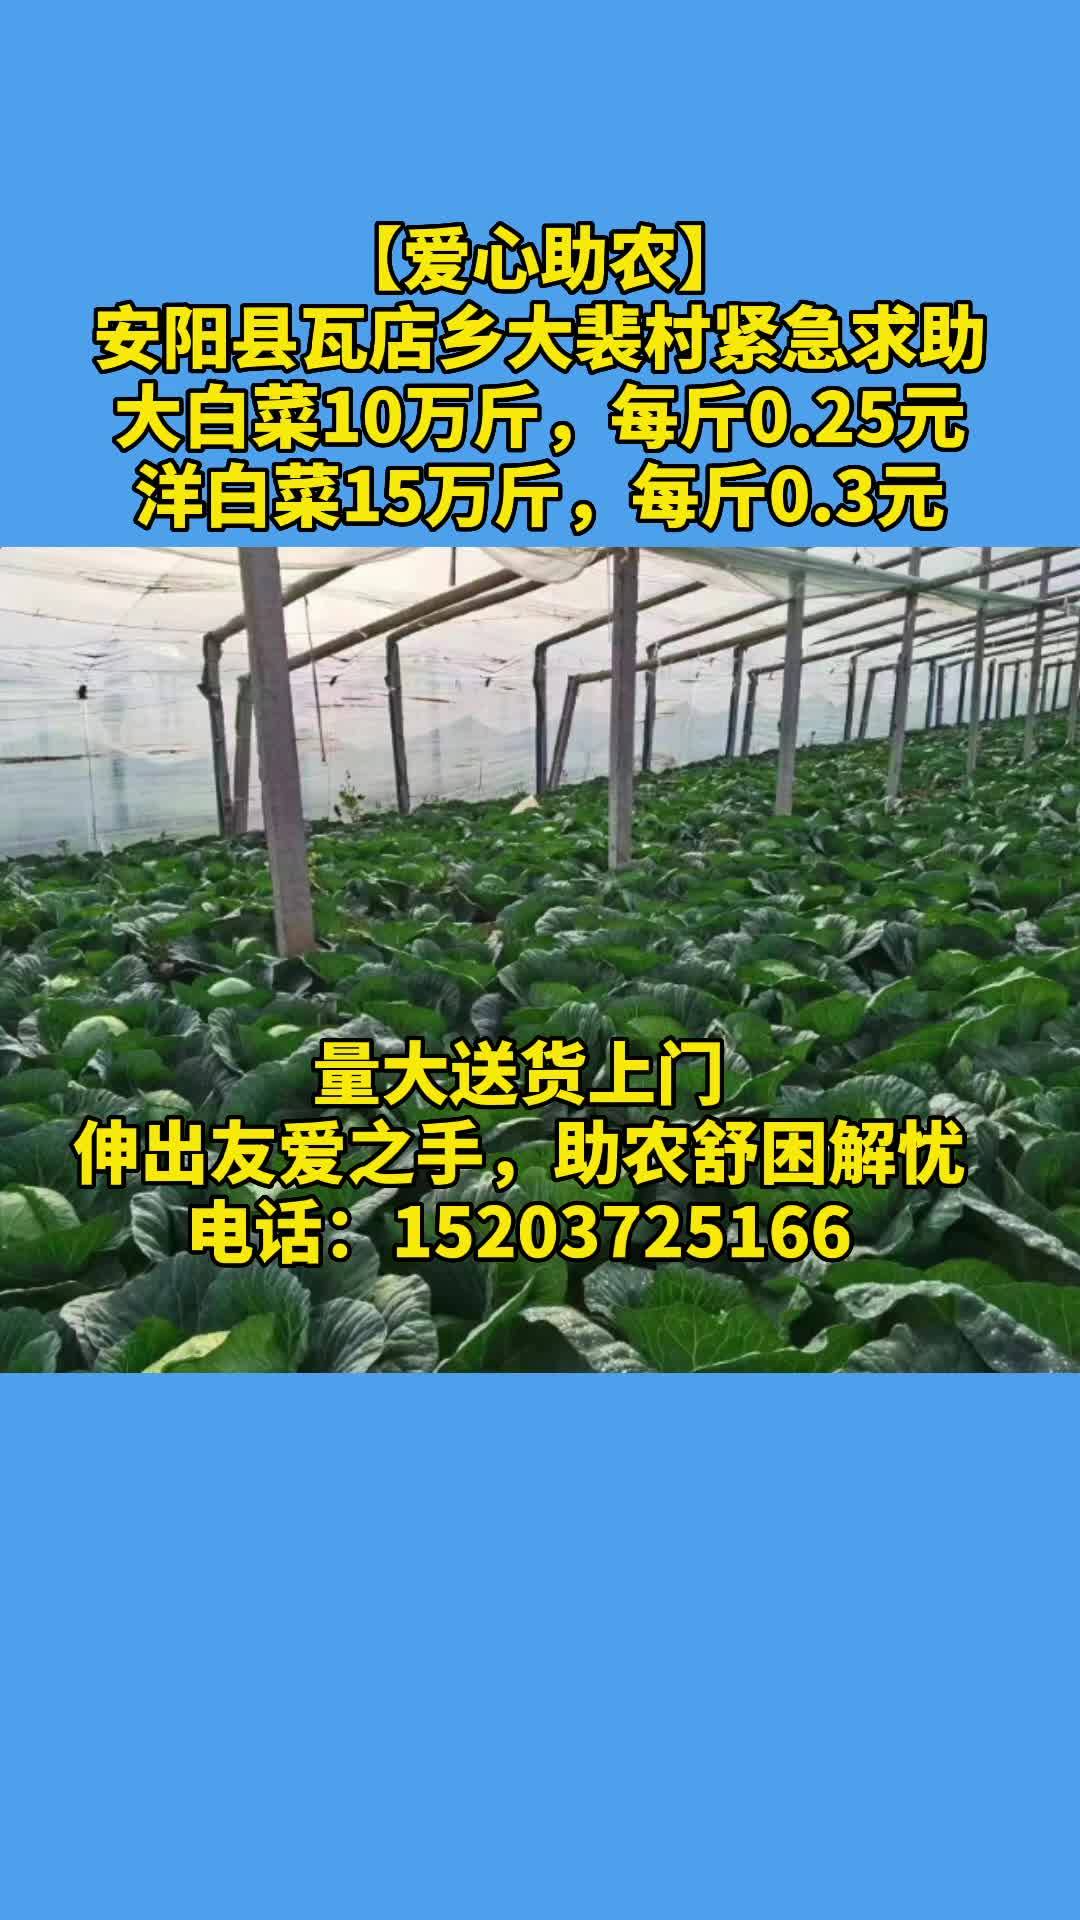 安阳县瓦店乡大裴村25万斤新鲜白菜成熟，请伸出援手助农纾困解忧！